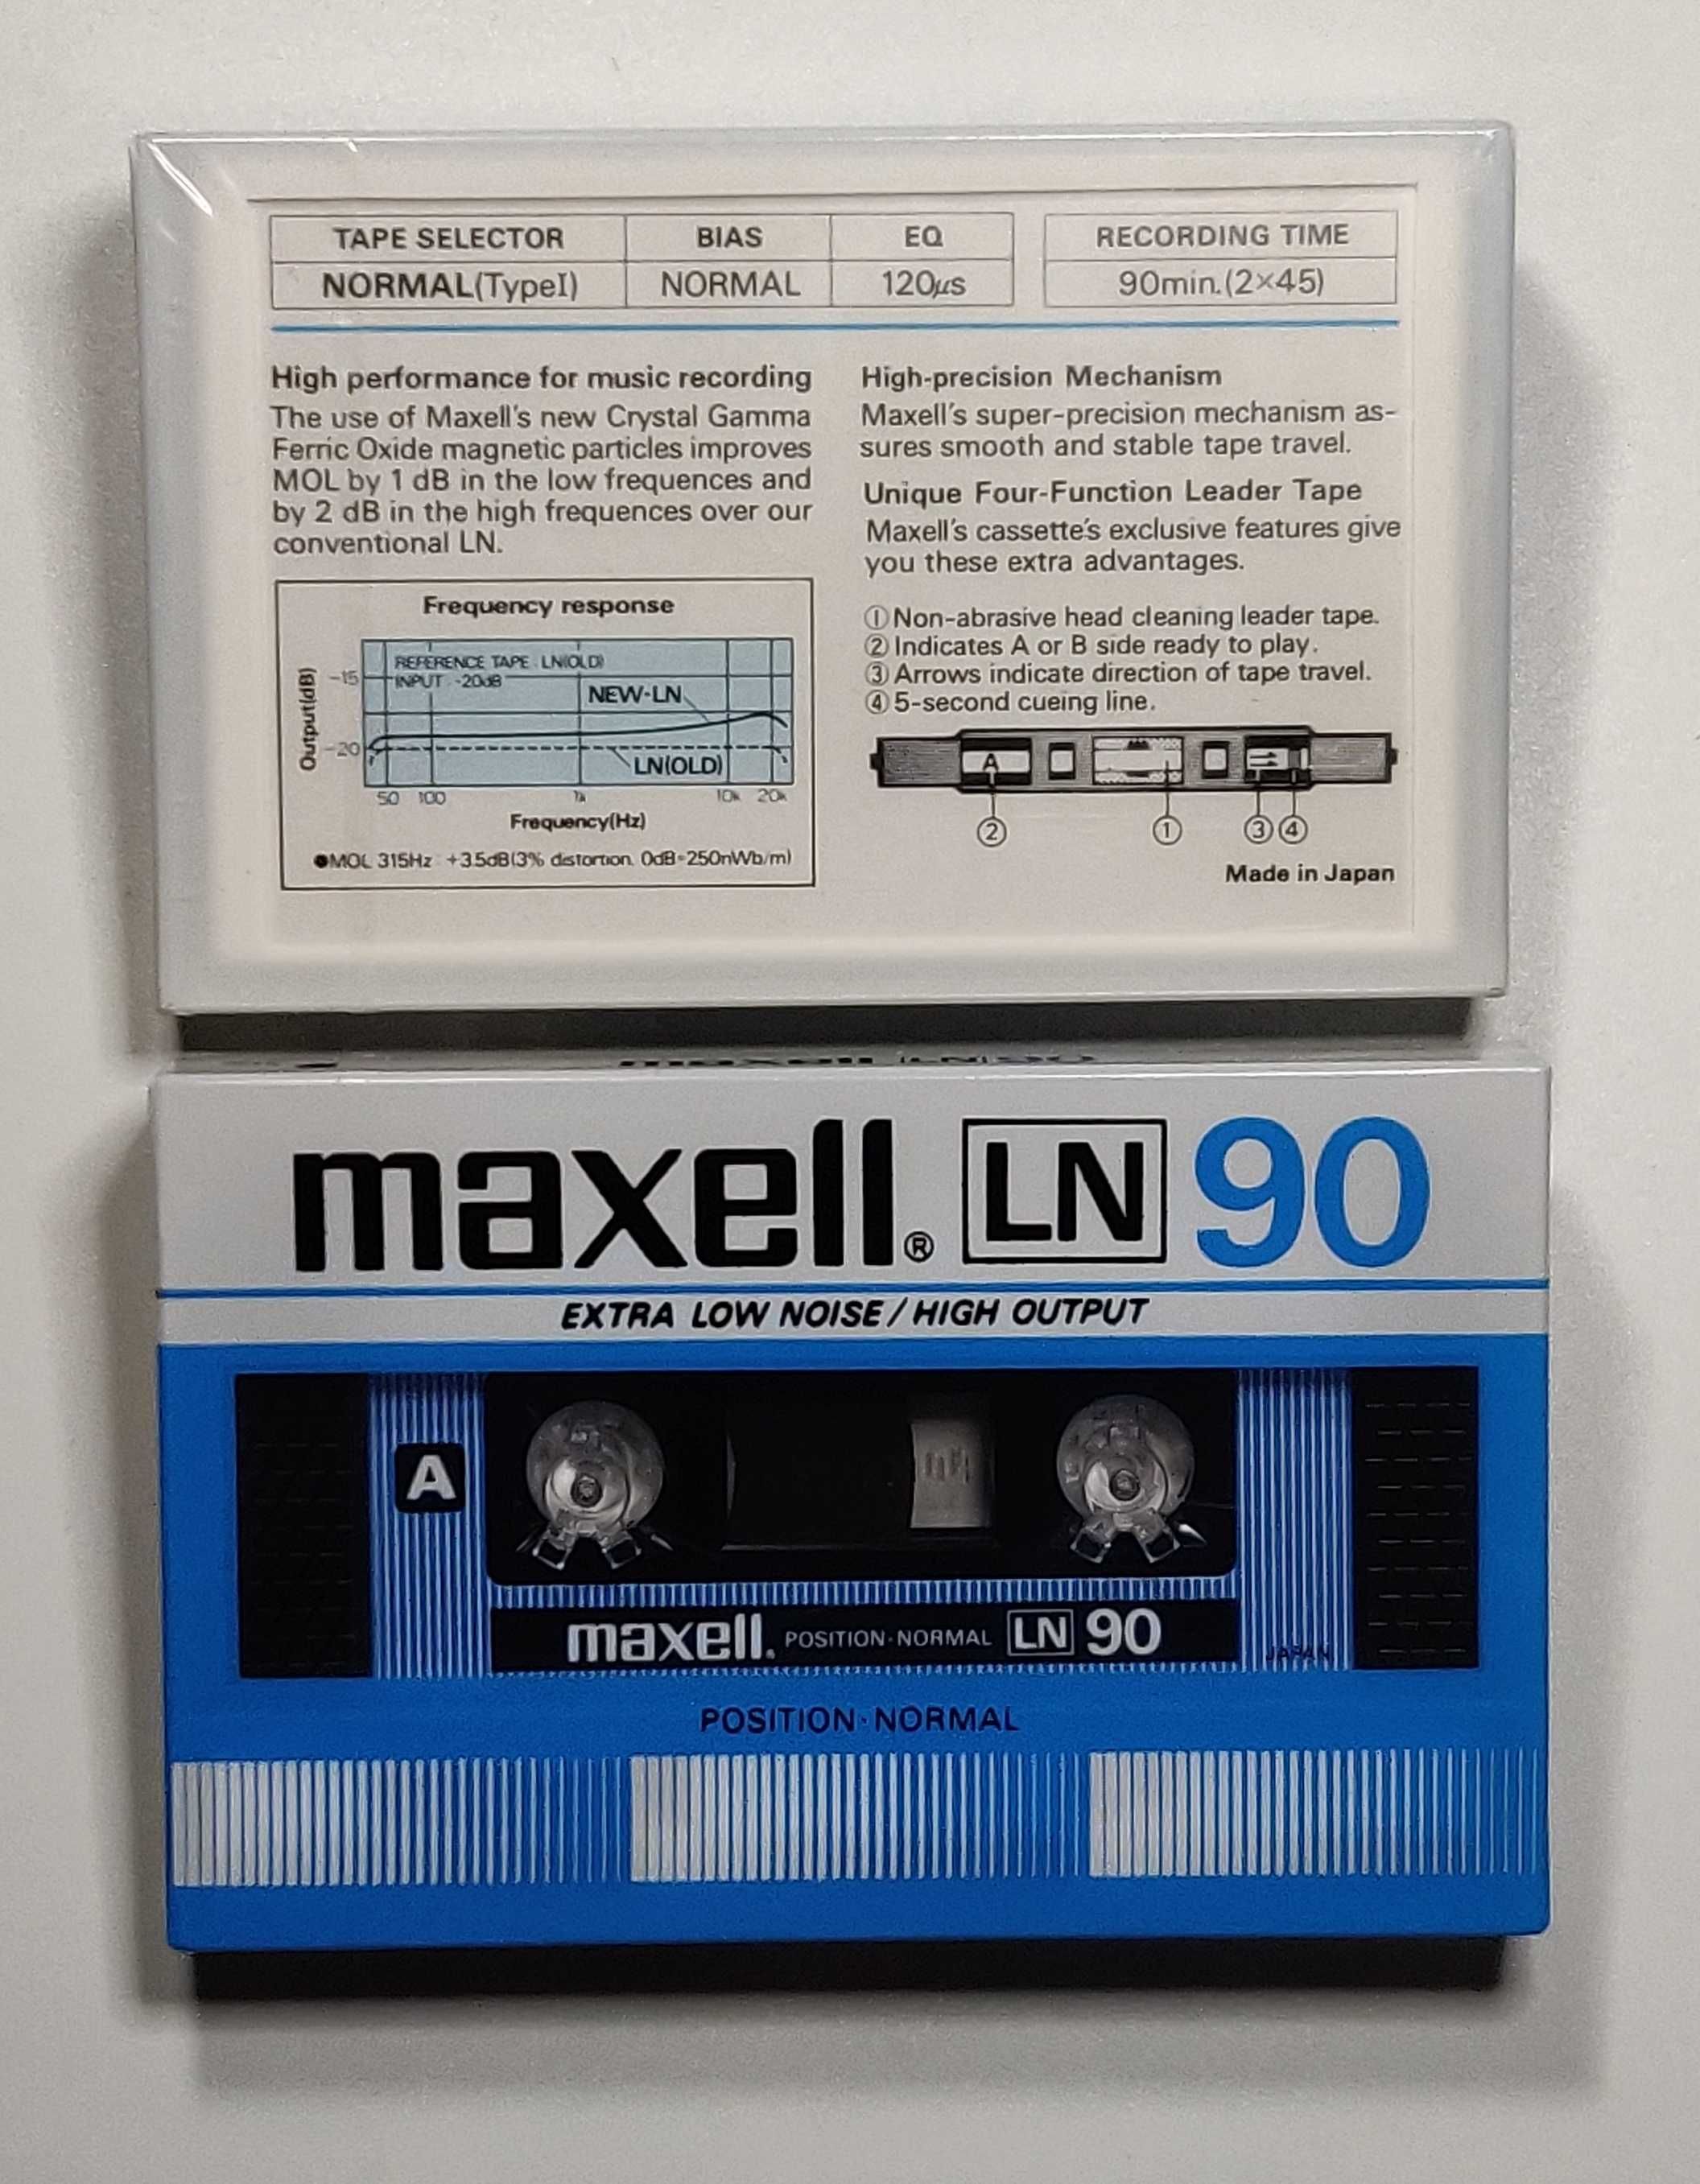 MAXELL LN-90 [1984 г. EUR] _новая аудиокассета в запечатанной упаковке